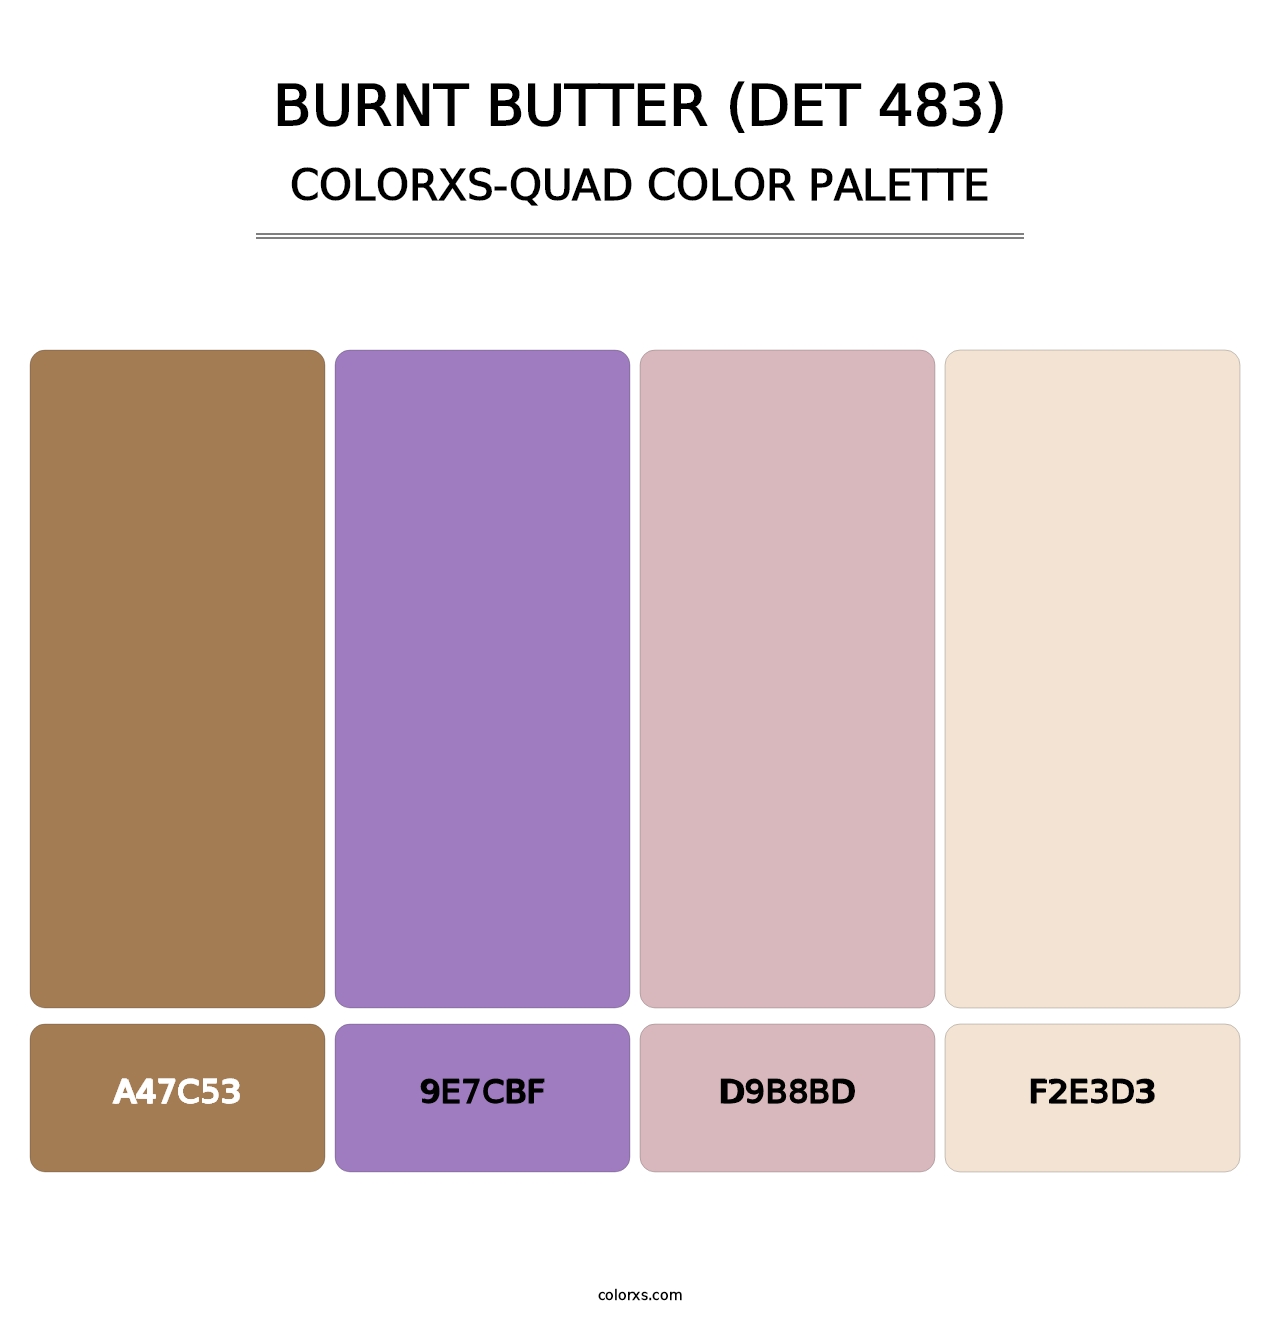 Burnt Butter (DET 483) - Colorxs Quad Palette